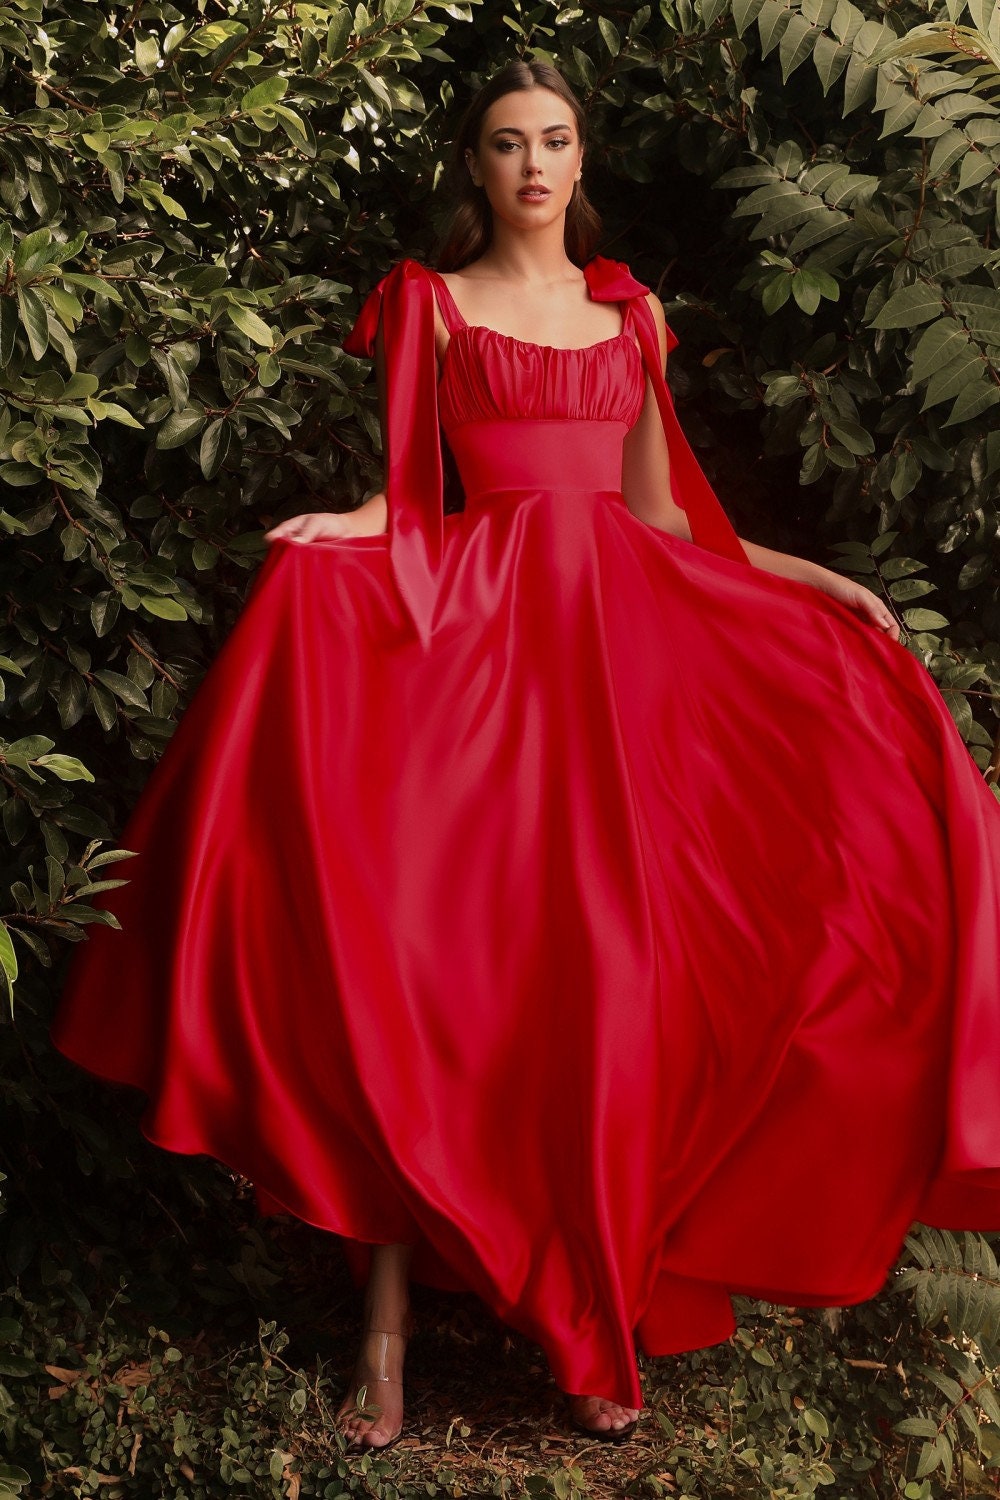 Empire Waist Dresses for Women - Ever-Pretty US